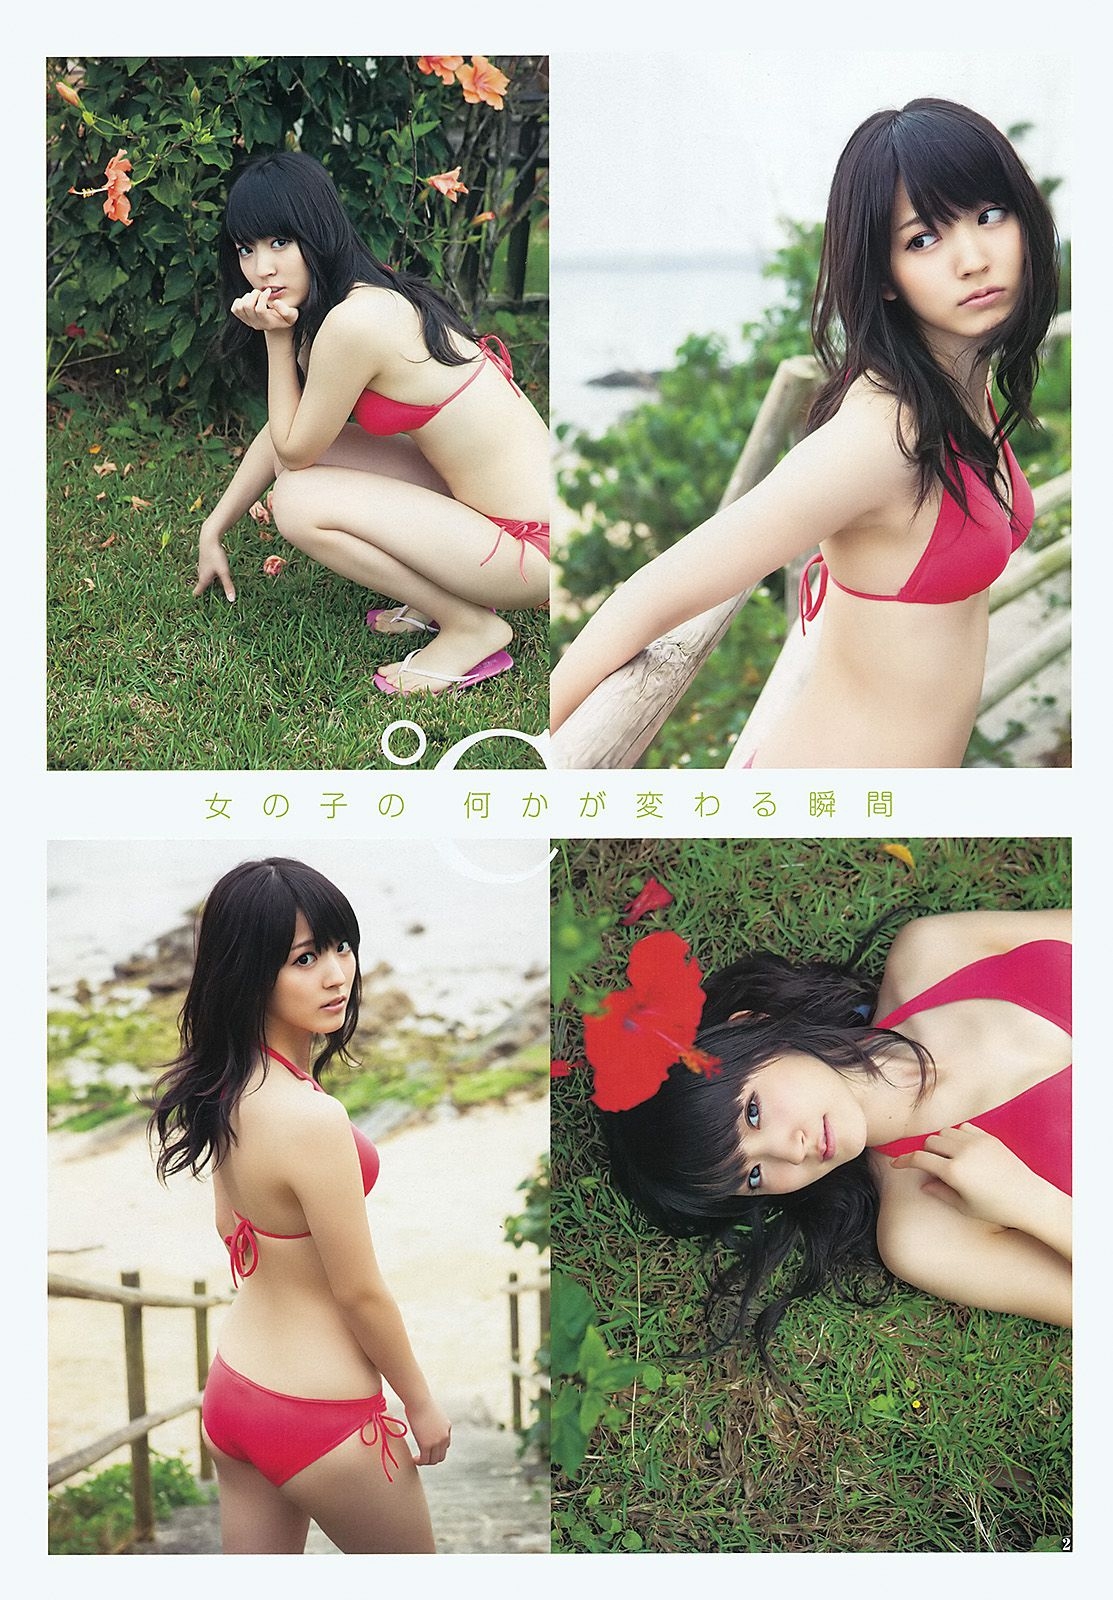 鈴木愛理 柏木由紀 疋田英美 [Weekly Young Jump] 2012年No.20 写真杂志 